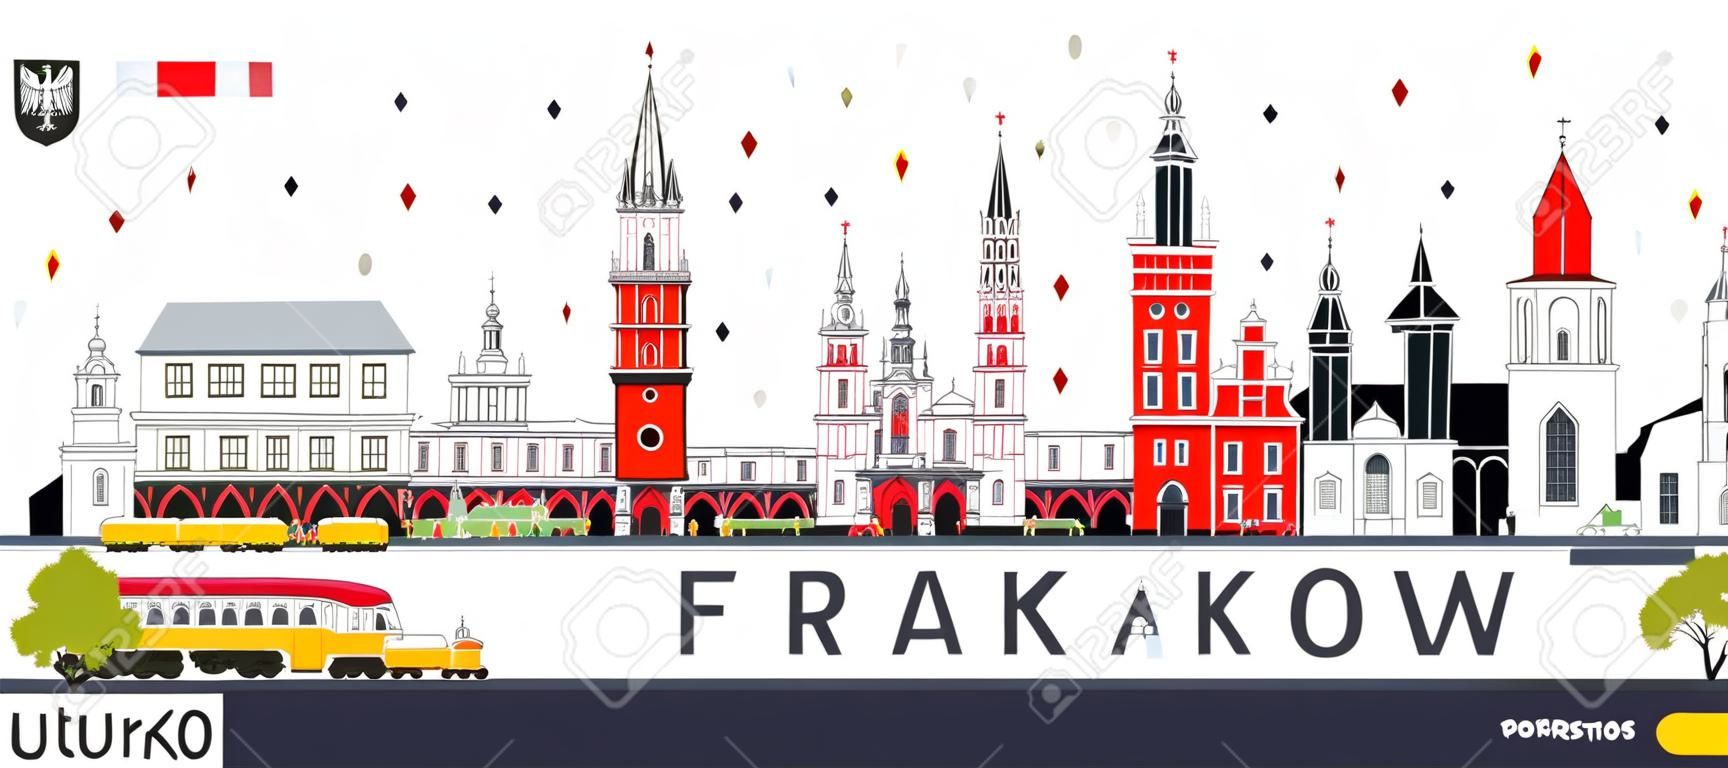 Krakau Polen Stadt Skyline mit Farbe isoliert isoliert auf weiß . Vektor-Illustration . Geschäftsreise- und Tourismuskonzept mit historischer Architektur . Stadtbild mit Sehenswürdigkeiten